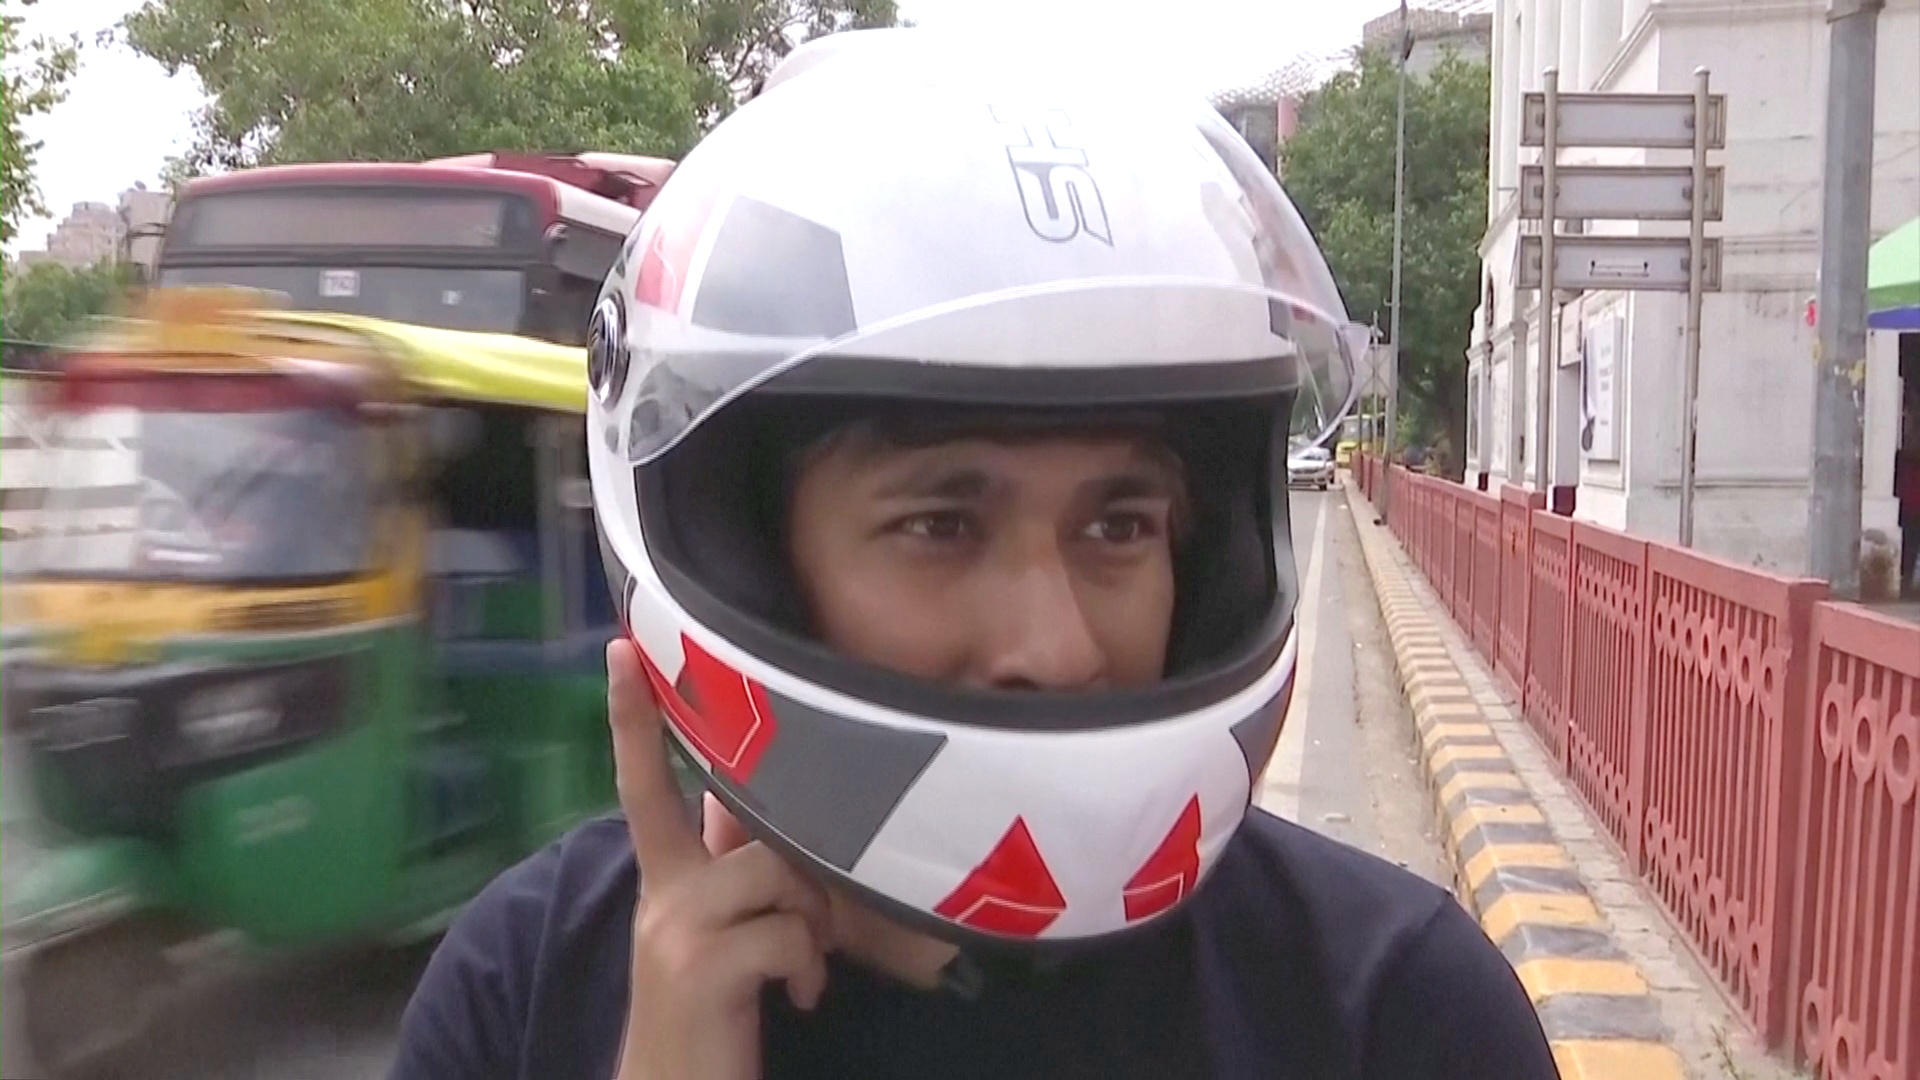 Шлем с воздухоочистителем продают в Индии